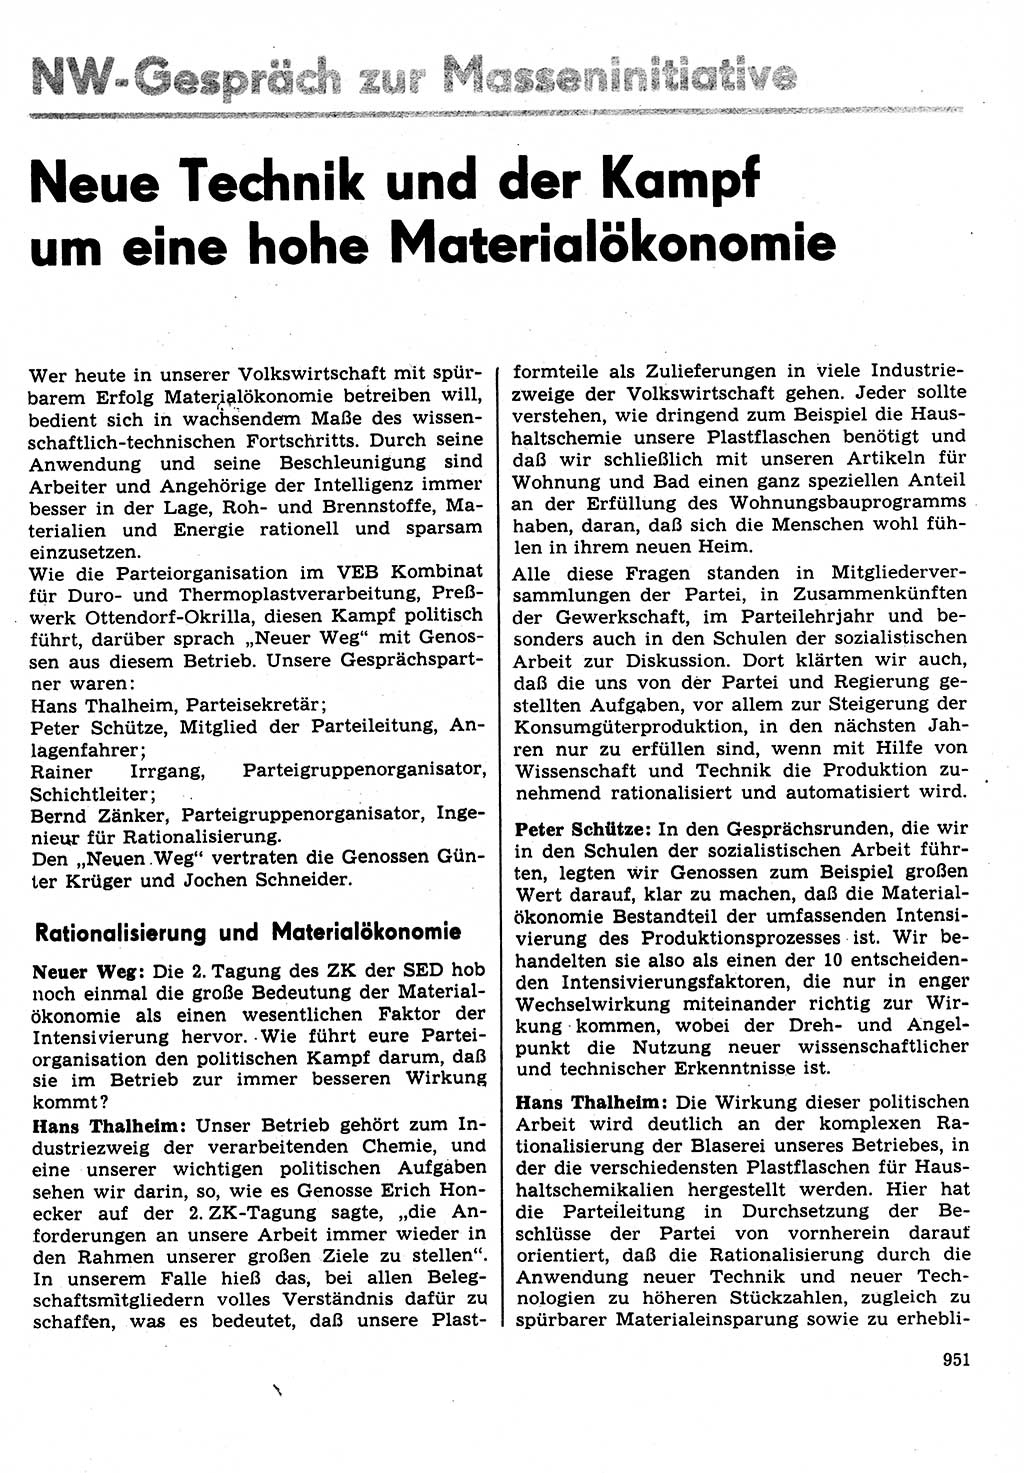 Neuer Weg (NW), Organ des Zentralkomitees (ZK) der SED (Sozialistische Einheitspartei Deutschlands) für Fragen des Parteilebens, 31. Jahrgang [Deutsche Demokratische Republik (DDR)] 1976, Seite 951 (NW ZK SED DDR 1976, S. 951)